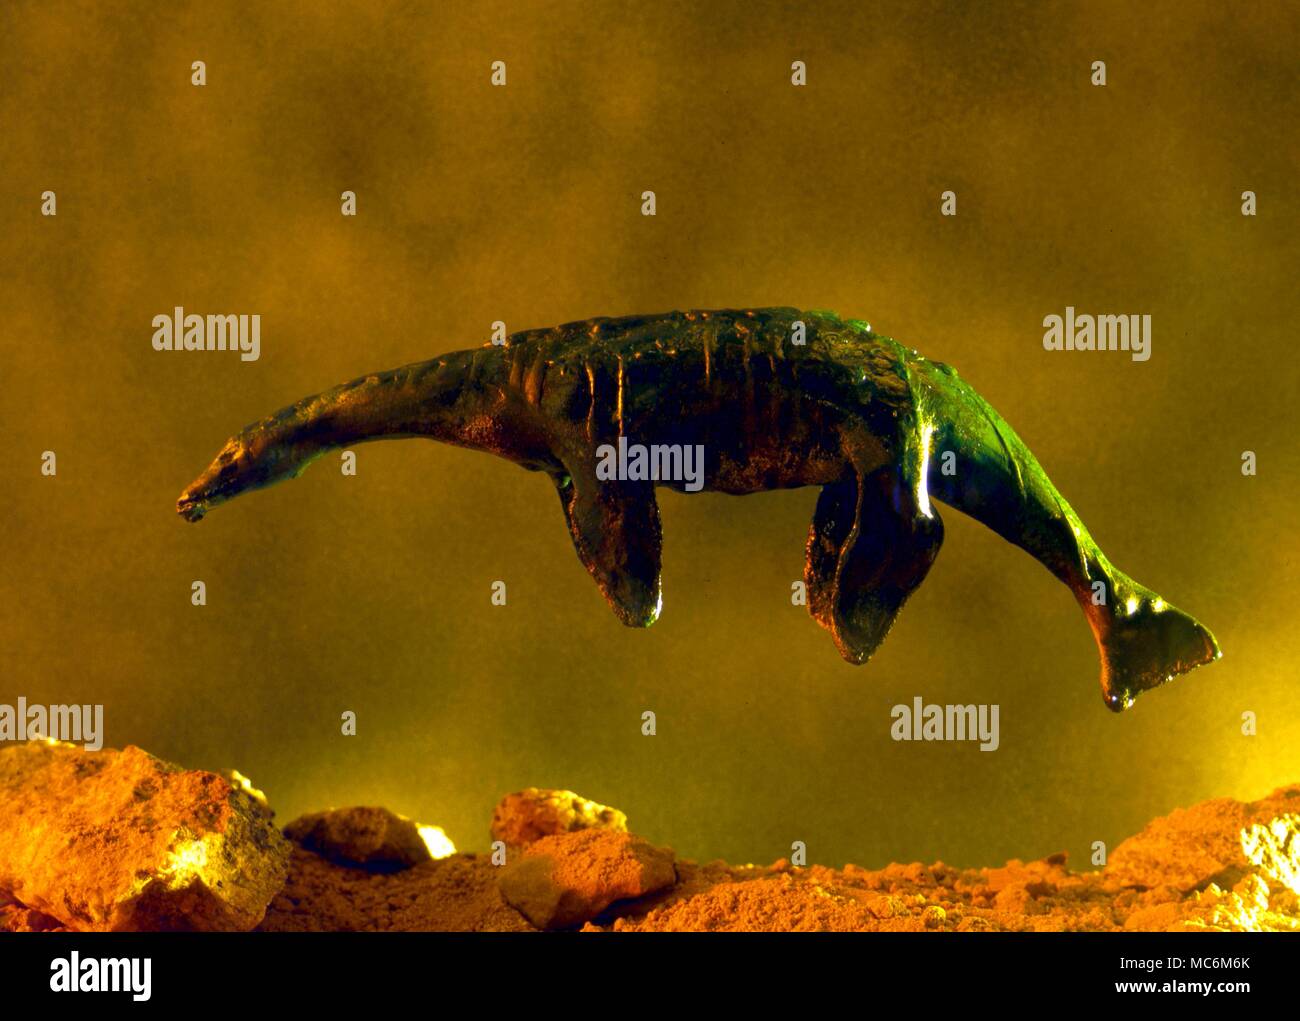 Monster. Meer oder See Monster Monster. Dies ist ein Modell eines prähistorischen aquatische Monster, der Plesiosaurus die Aprilwoche verbracht hat wie die ursprüngliche "Monster von Loch Ness' behauptet. Stockfoto